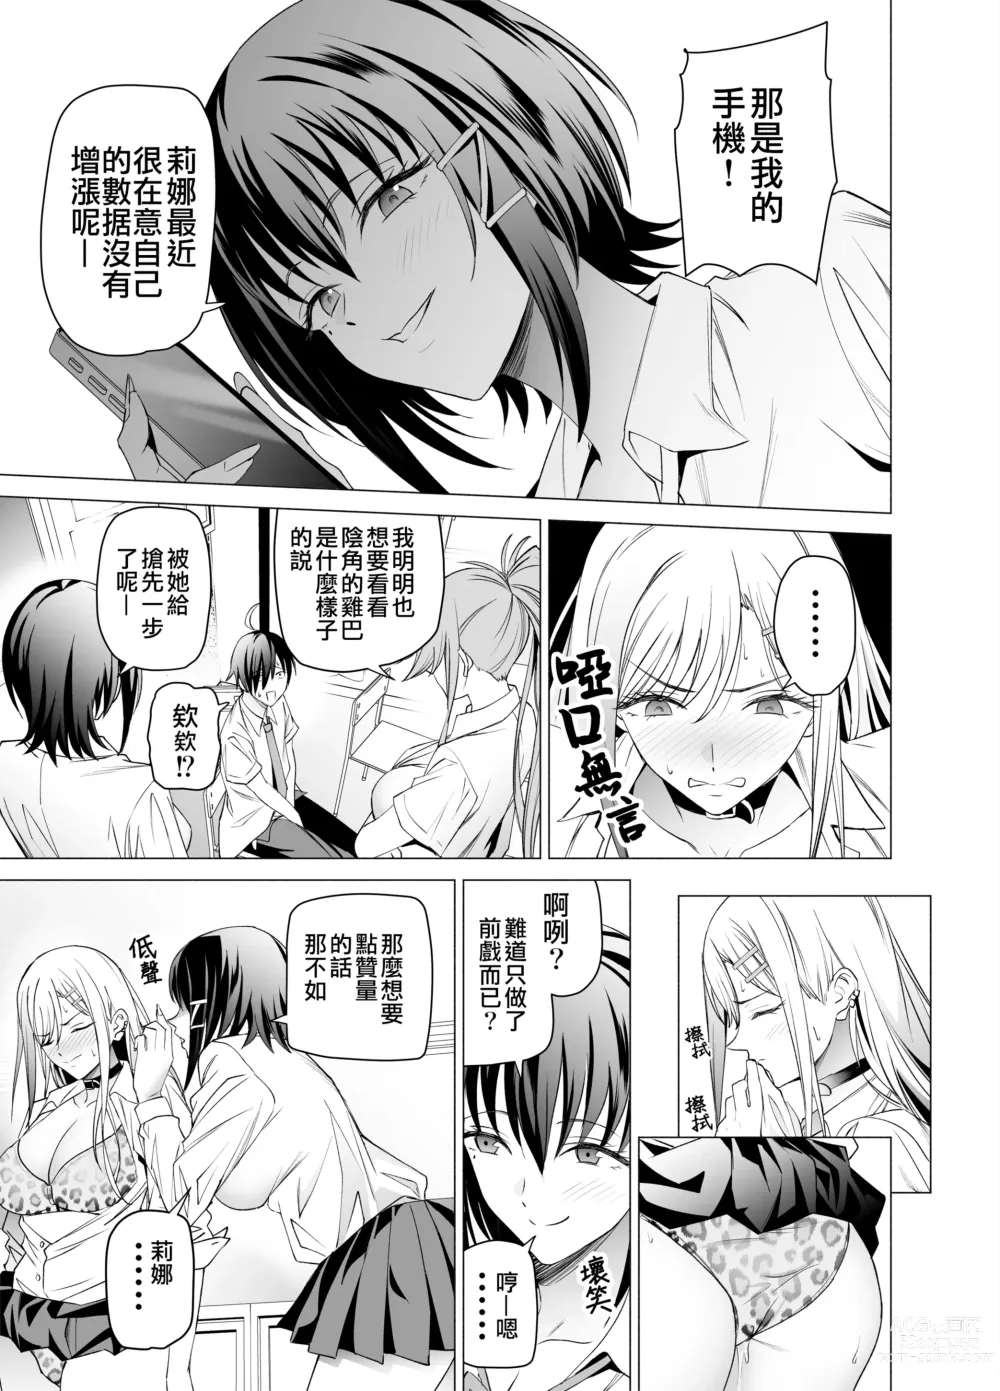 Page 19 of doujinshi 色情SNS的點贊量為目的而向你靠過來的辣妹的故事